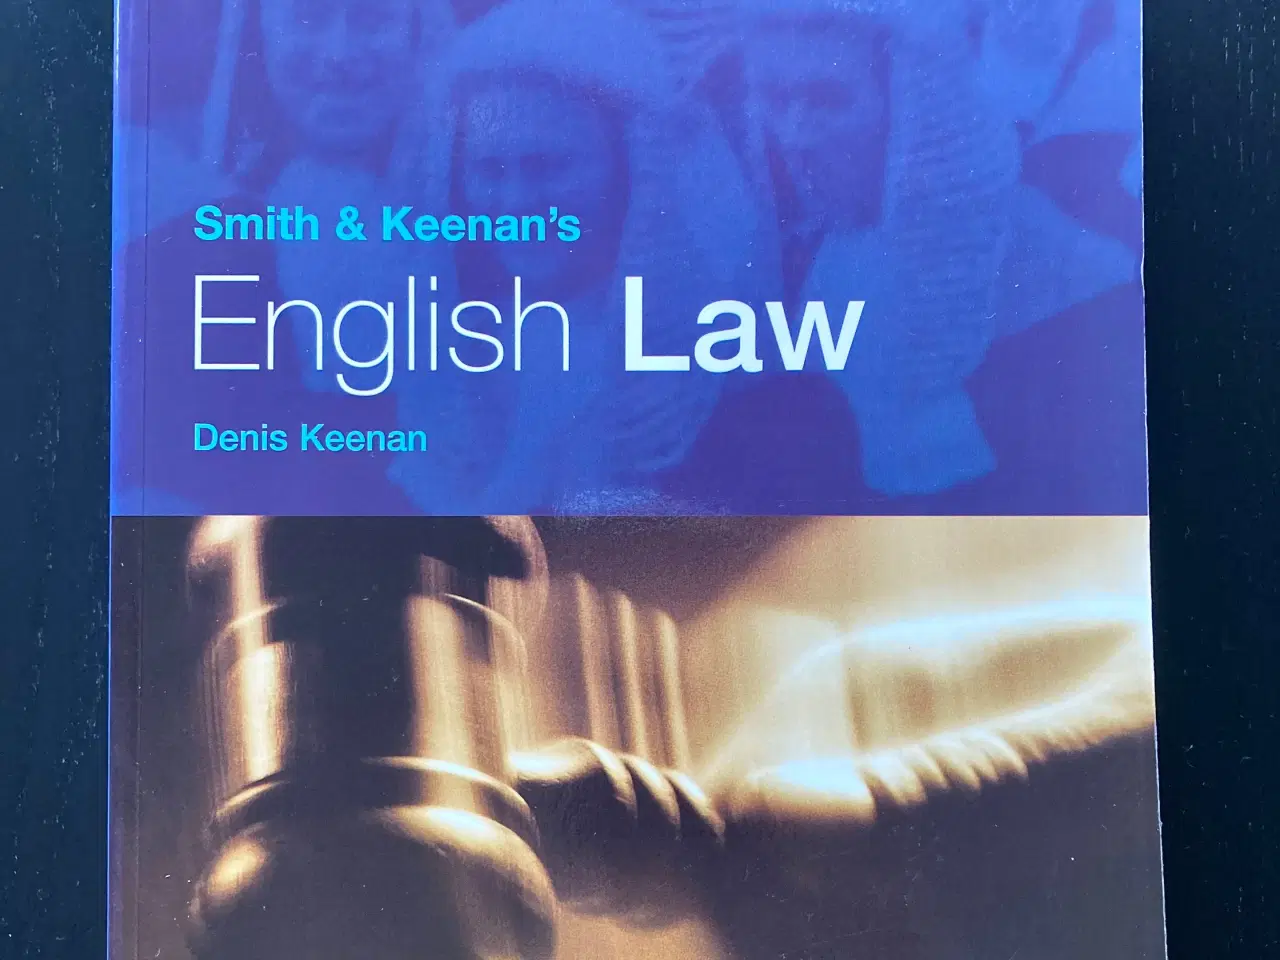 Billede 1 - Denis Keenan: English Law, 2001